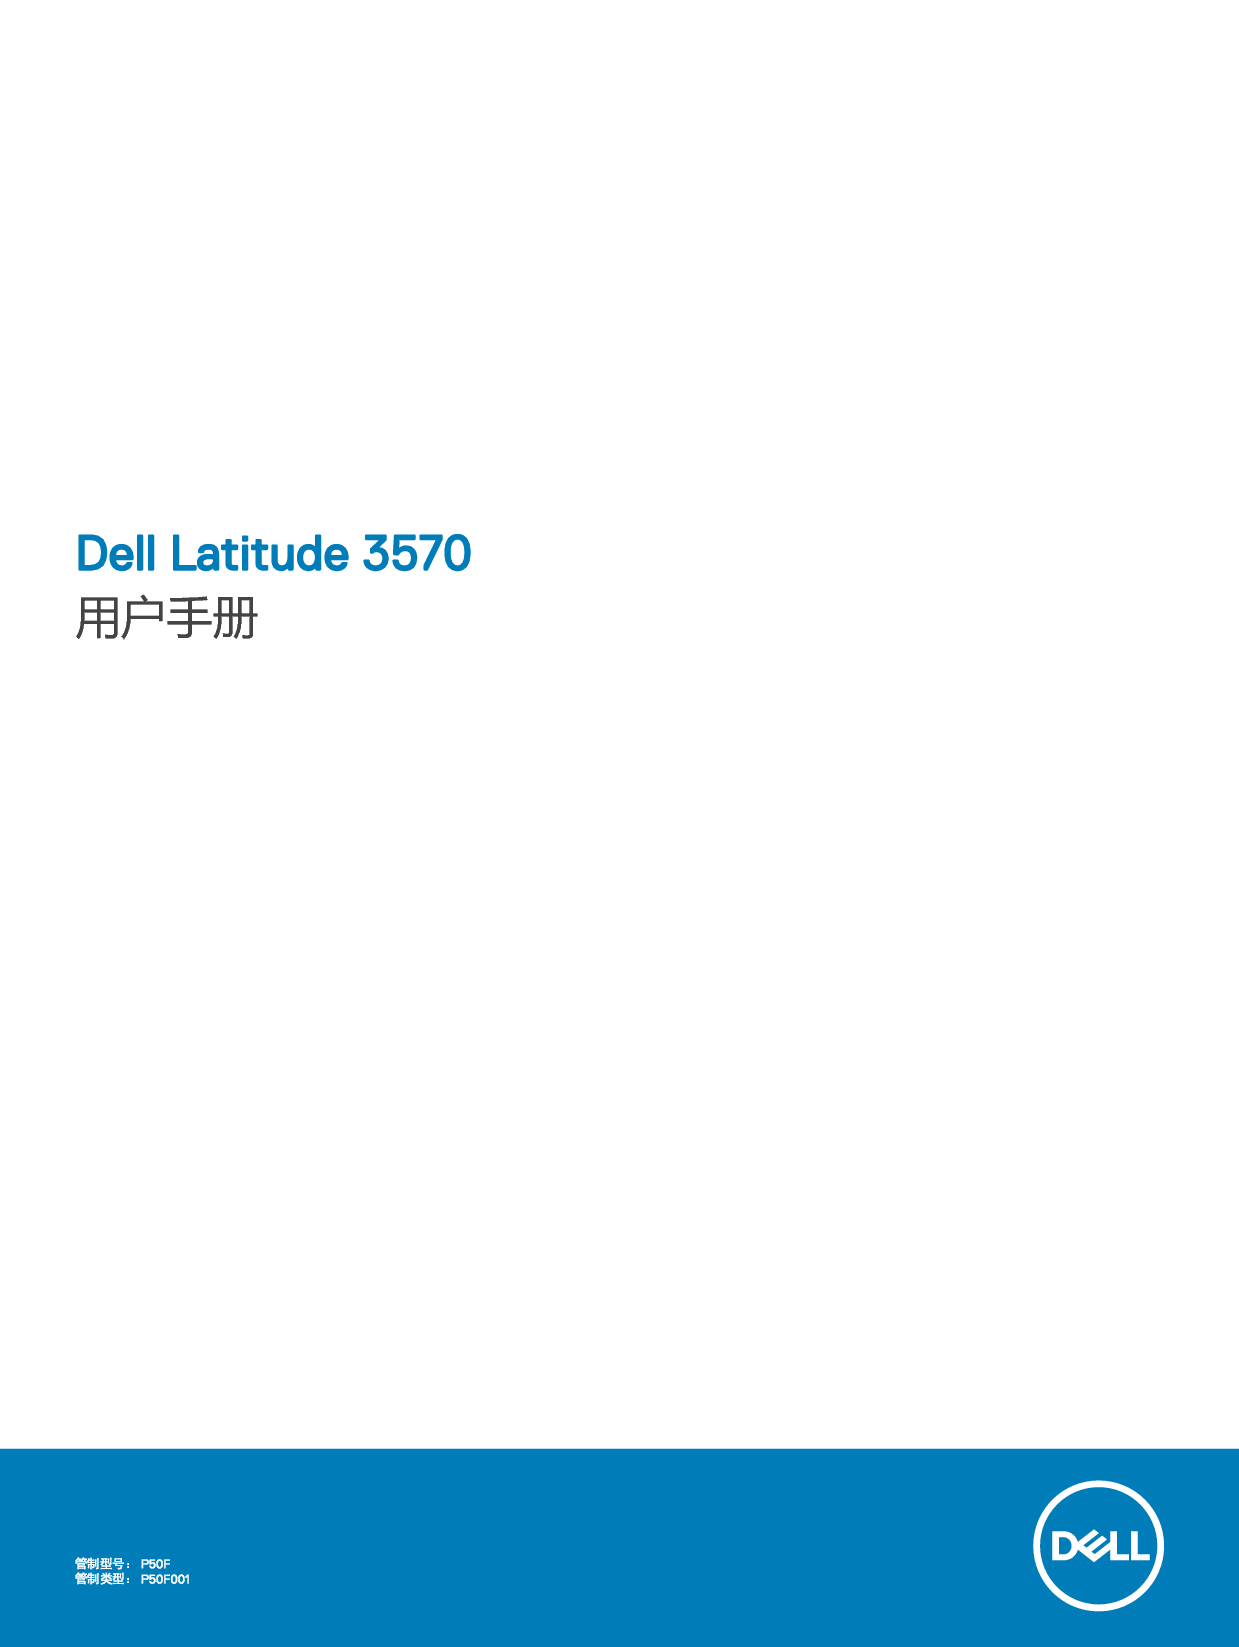 戴尔 Dell Latitude 3570 用户手册 封面